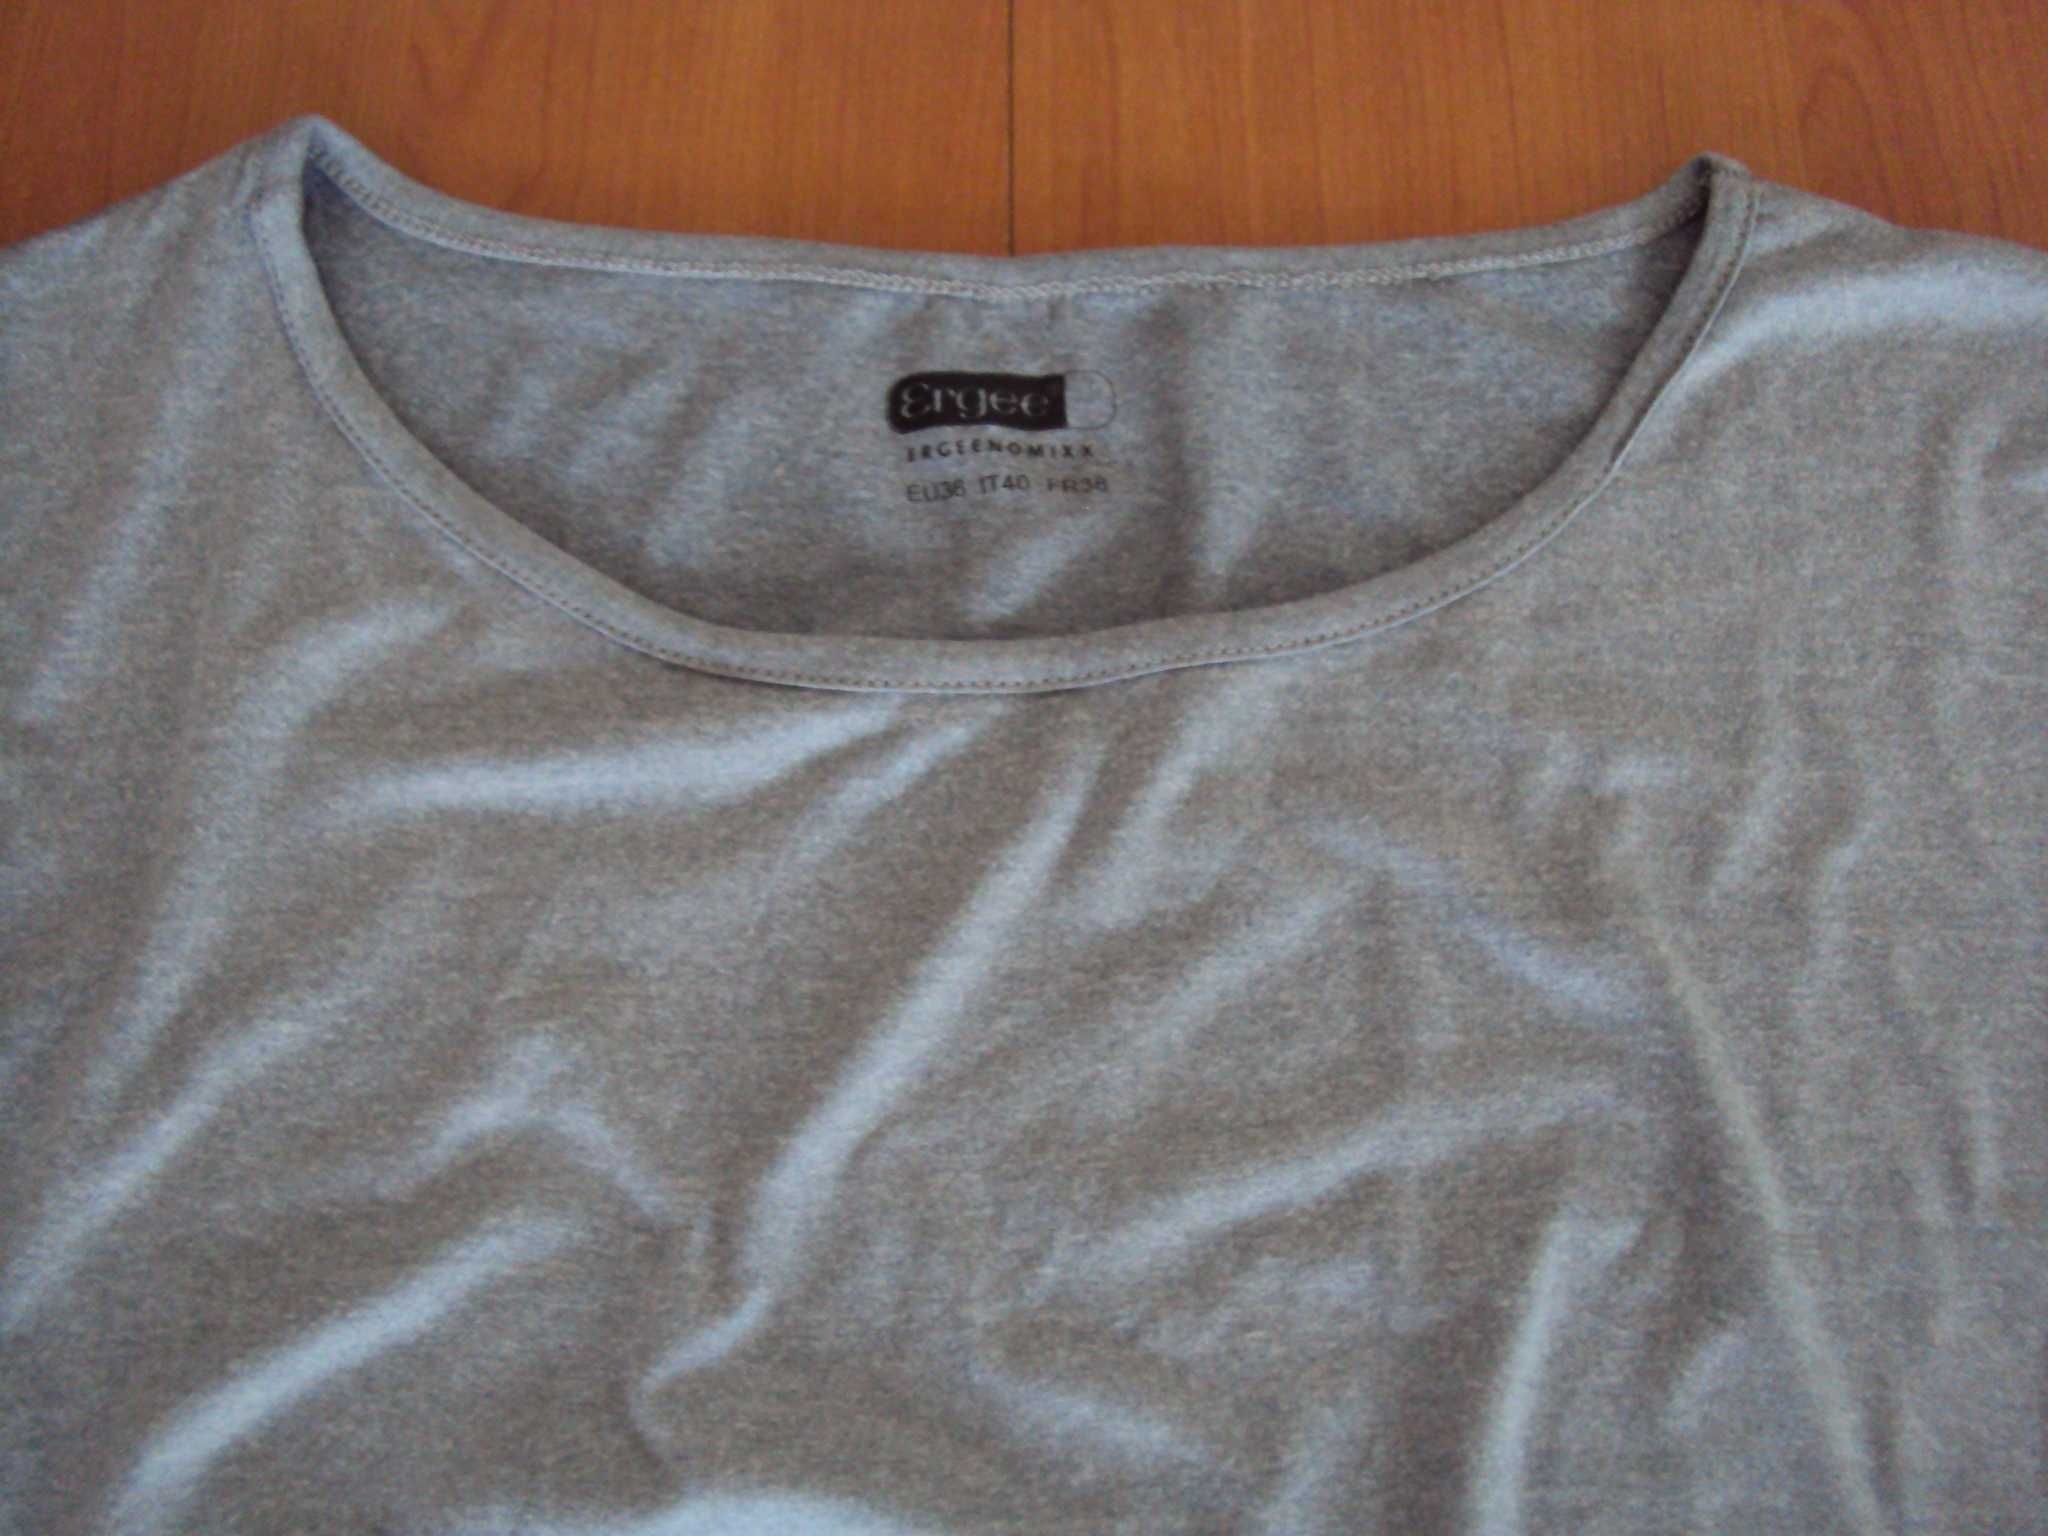 36 S / 38 M t-shirt damski sportowy szary koszulka sportowa Ergee